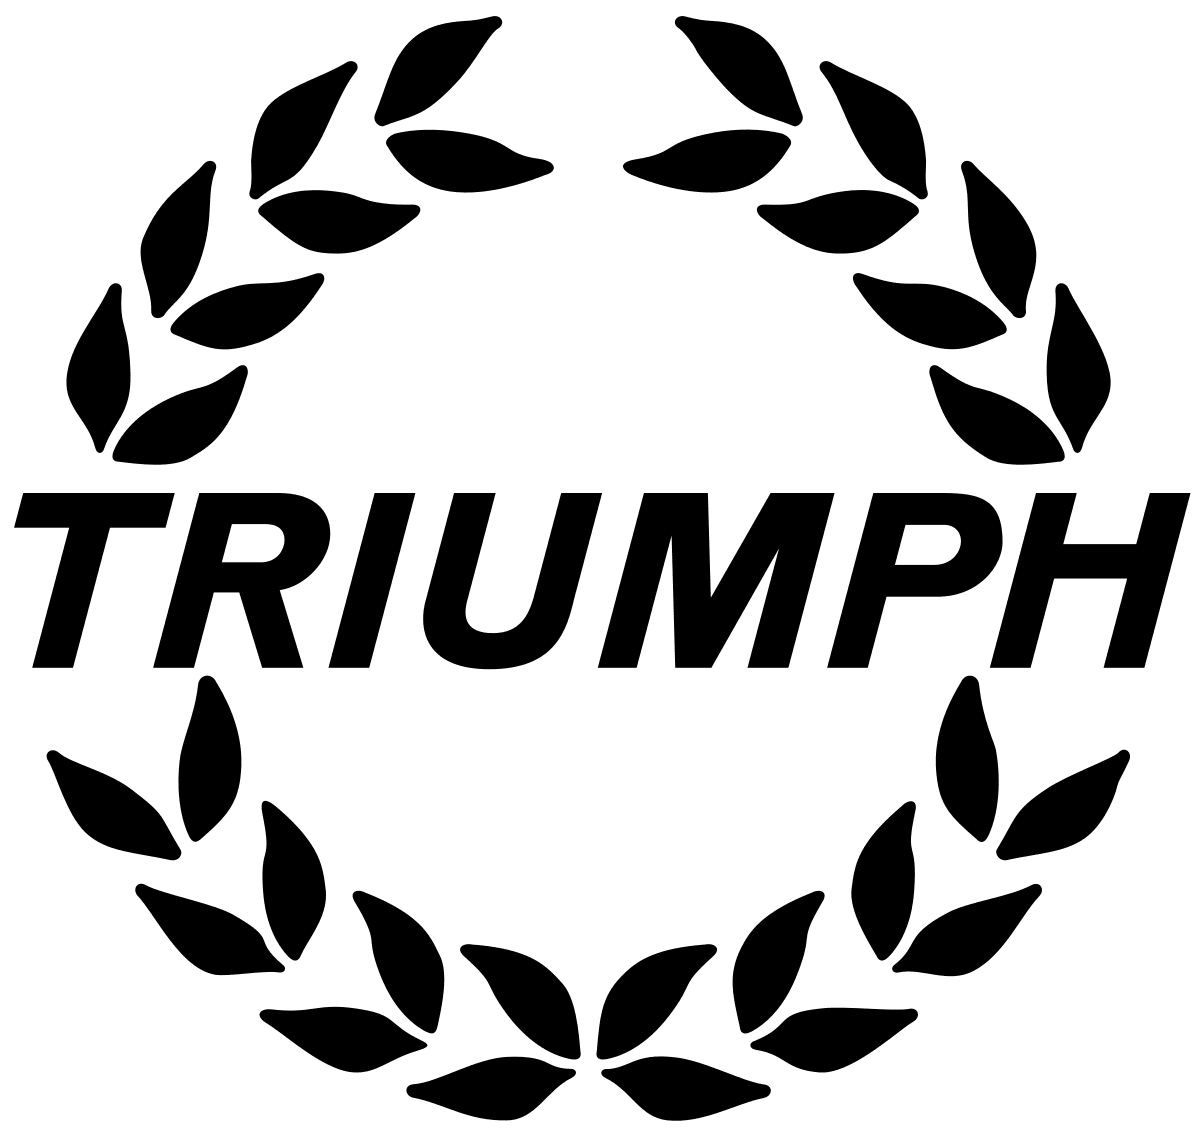 Triumph Cars